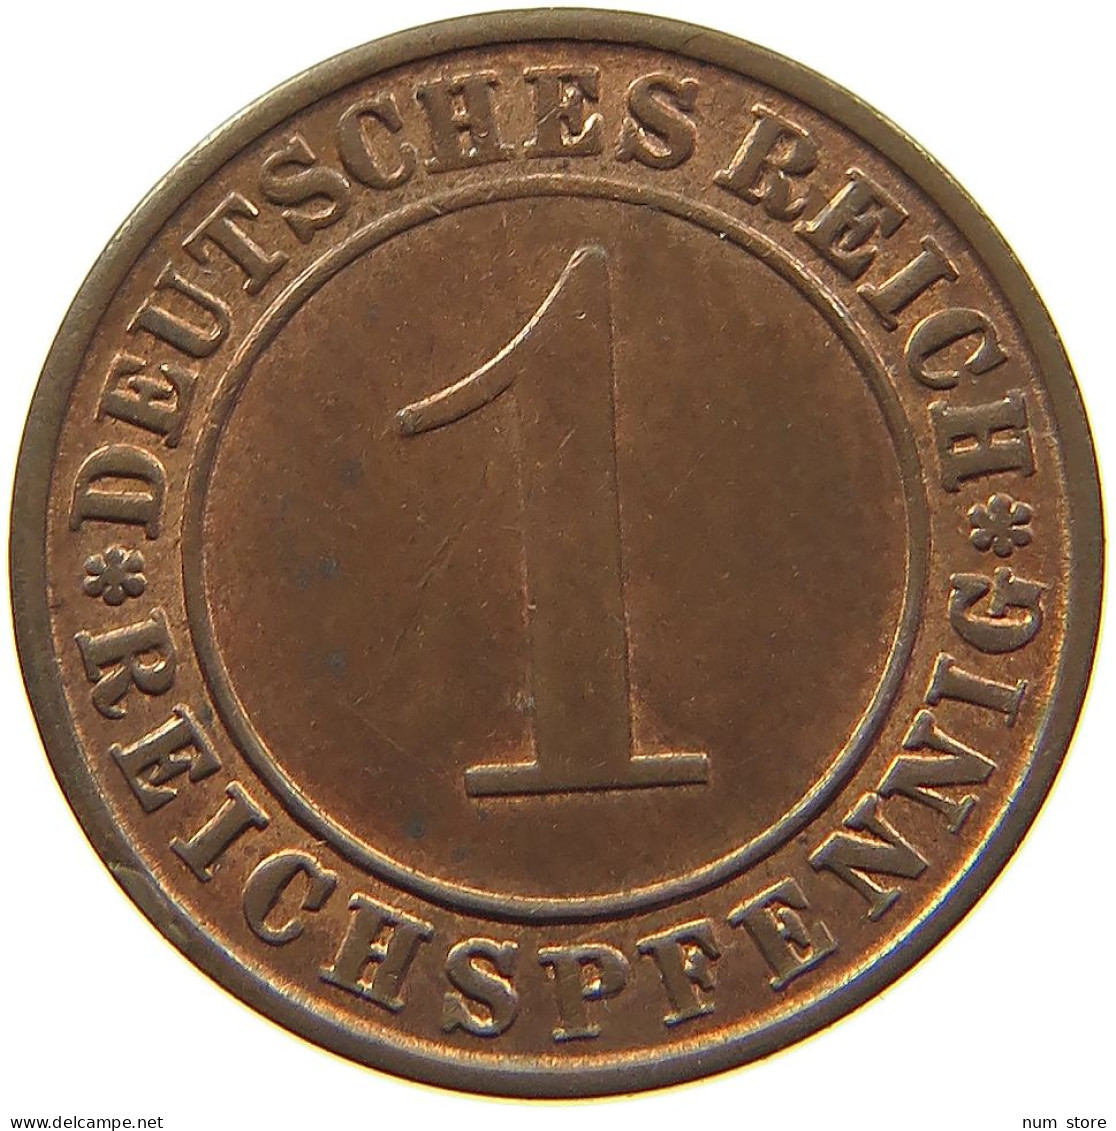 WEIMARER REPUBLIK REICHSPFENNIG 1936 A  #MA 100169 - 1 Rentenpfennig & 1 Reichspfennig